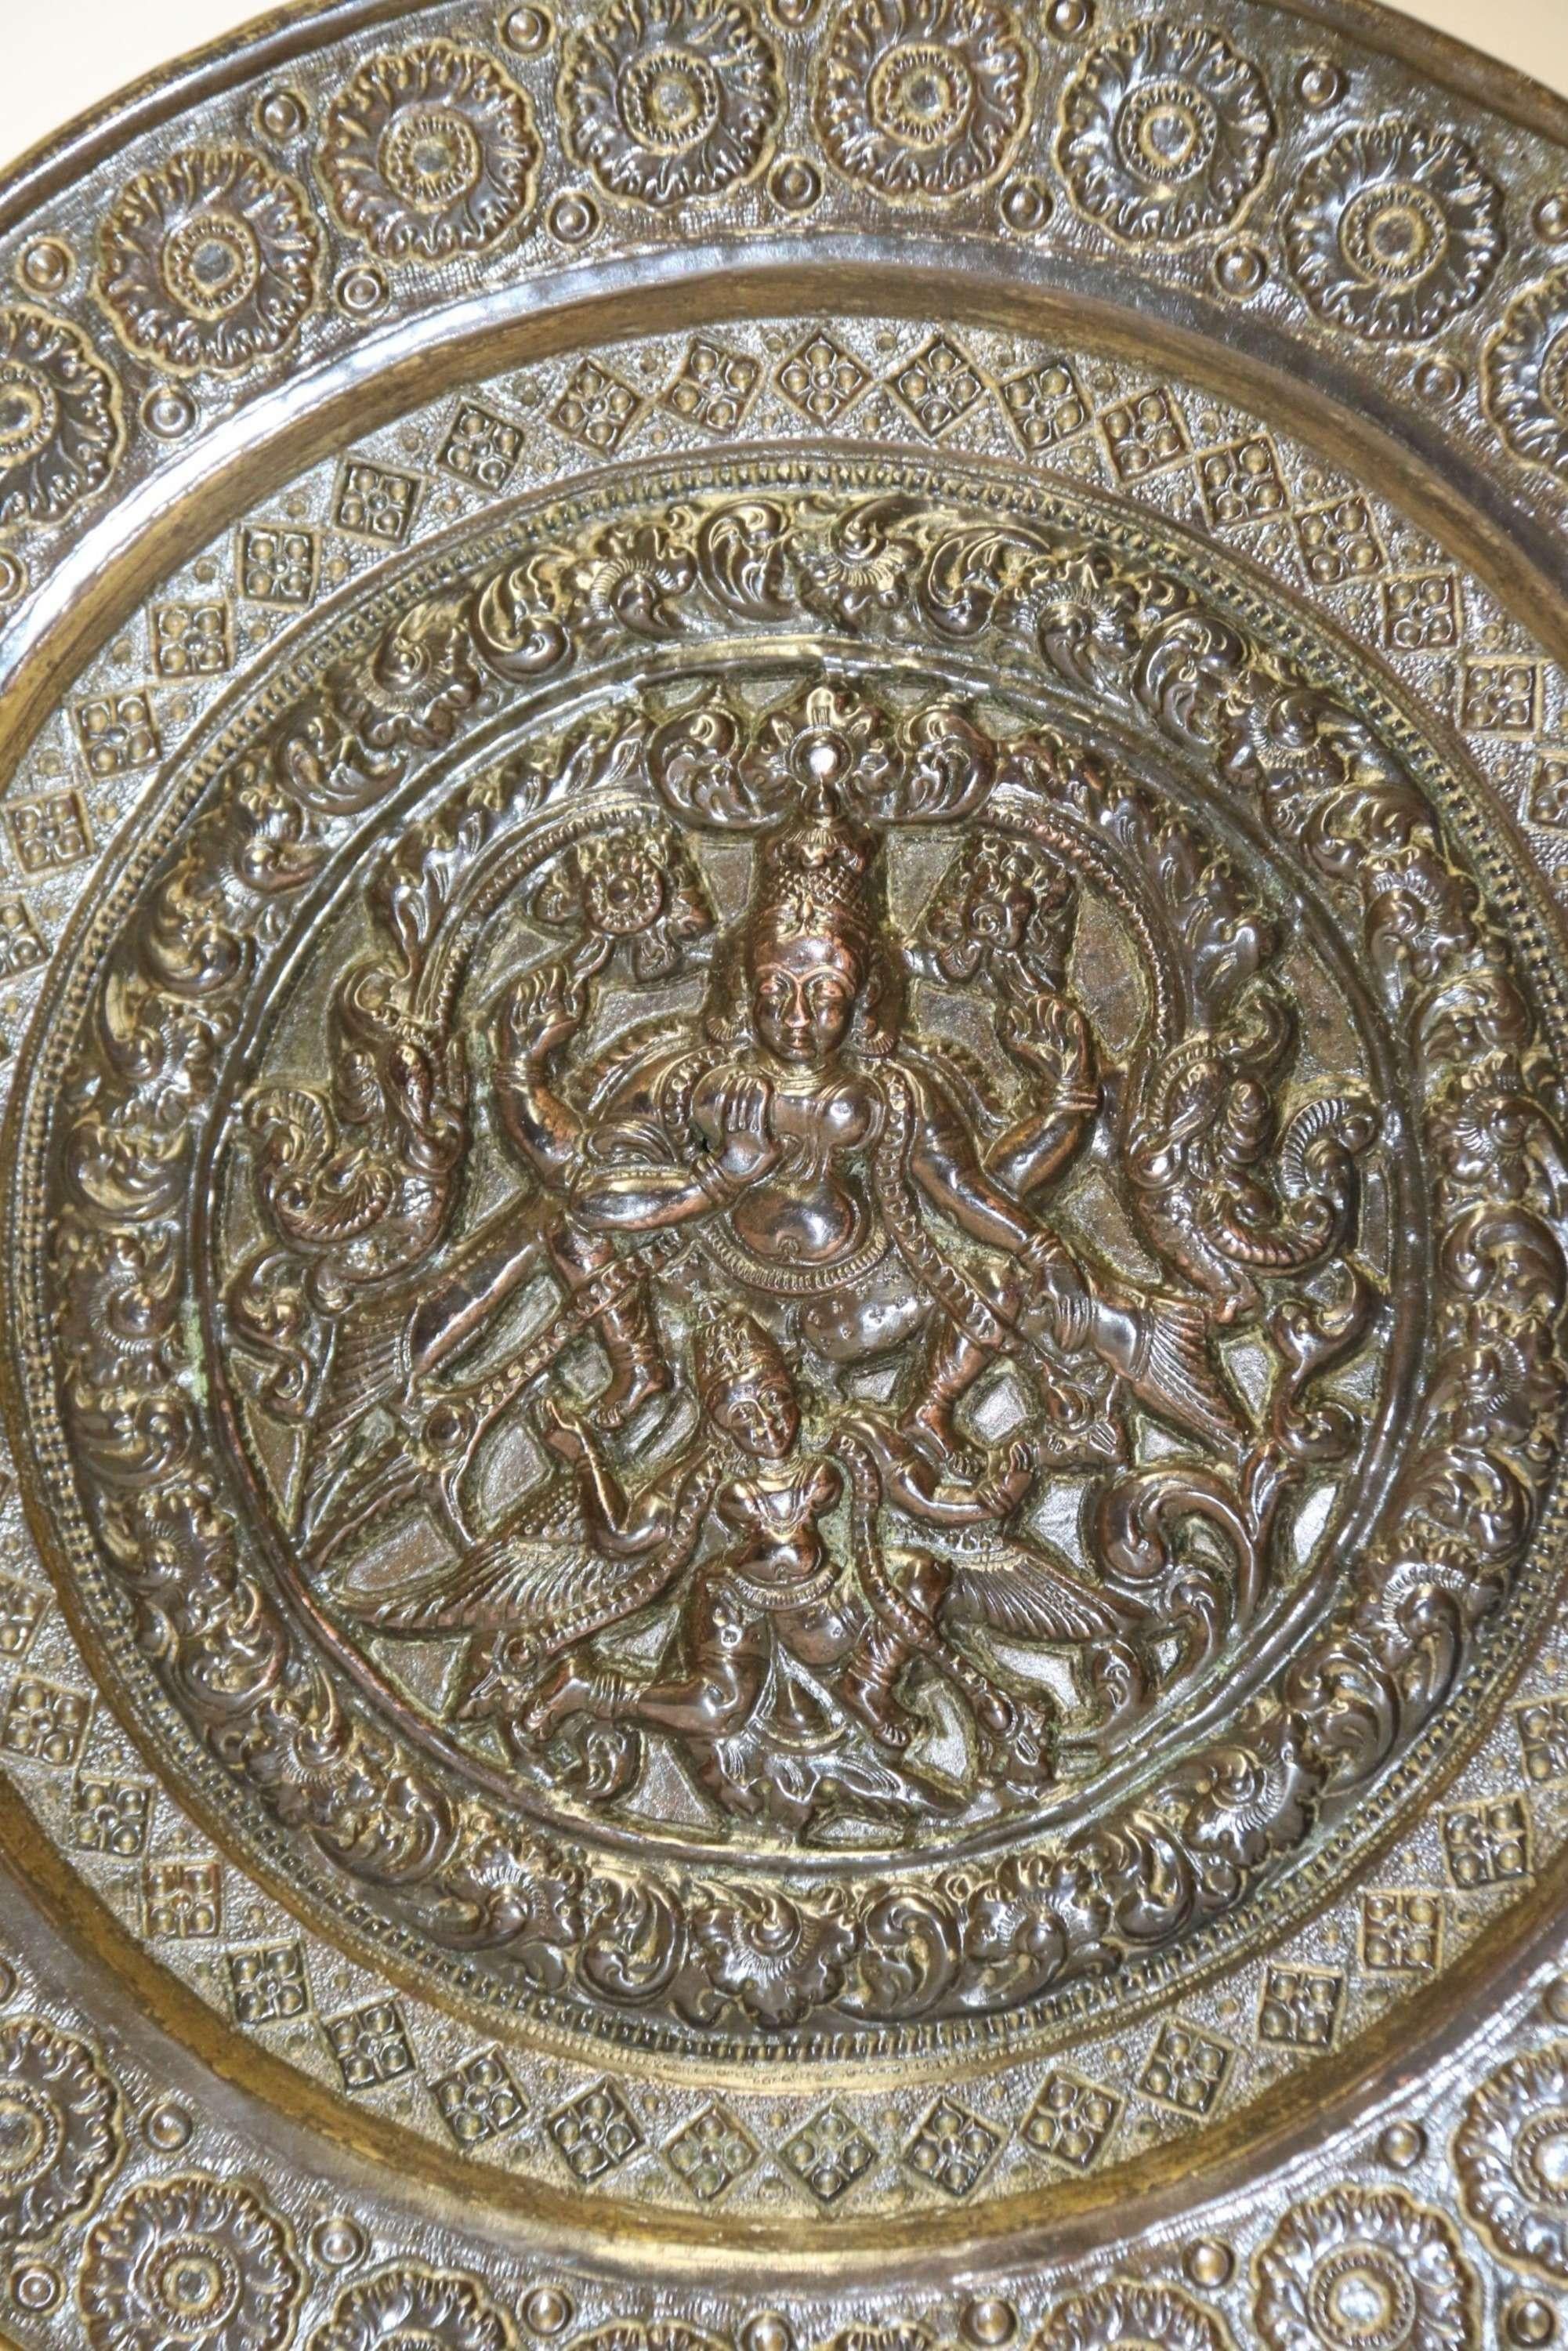 A.C.I.C. Indian Raj Period Plaque

Cette plaque en cuivre et en laiton de la période du Raj indien, finement travaillée et ciselée, présente un panneau central complexe représentant Nataraga, le dieu de la danse, accompagné d'oiseaux exotiques. Le